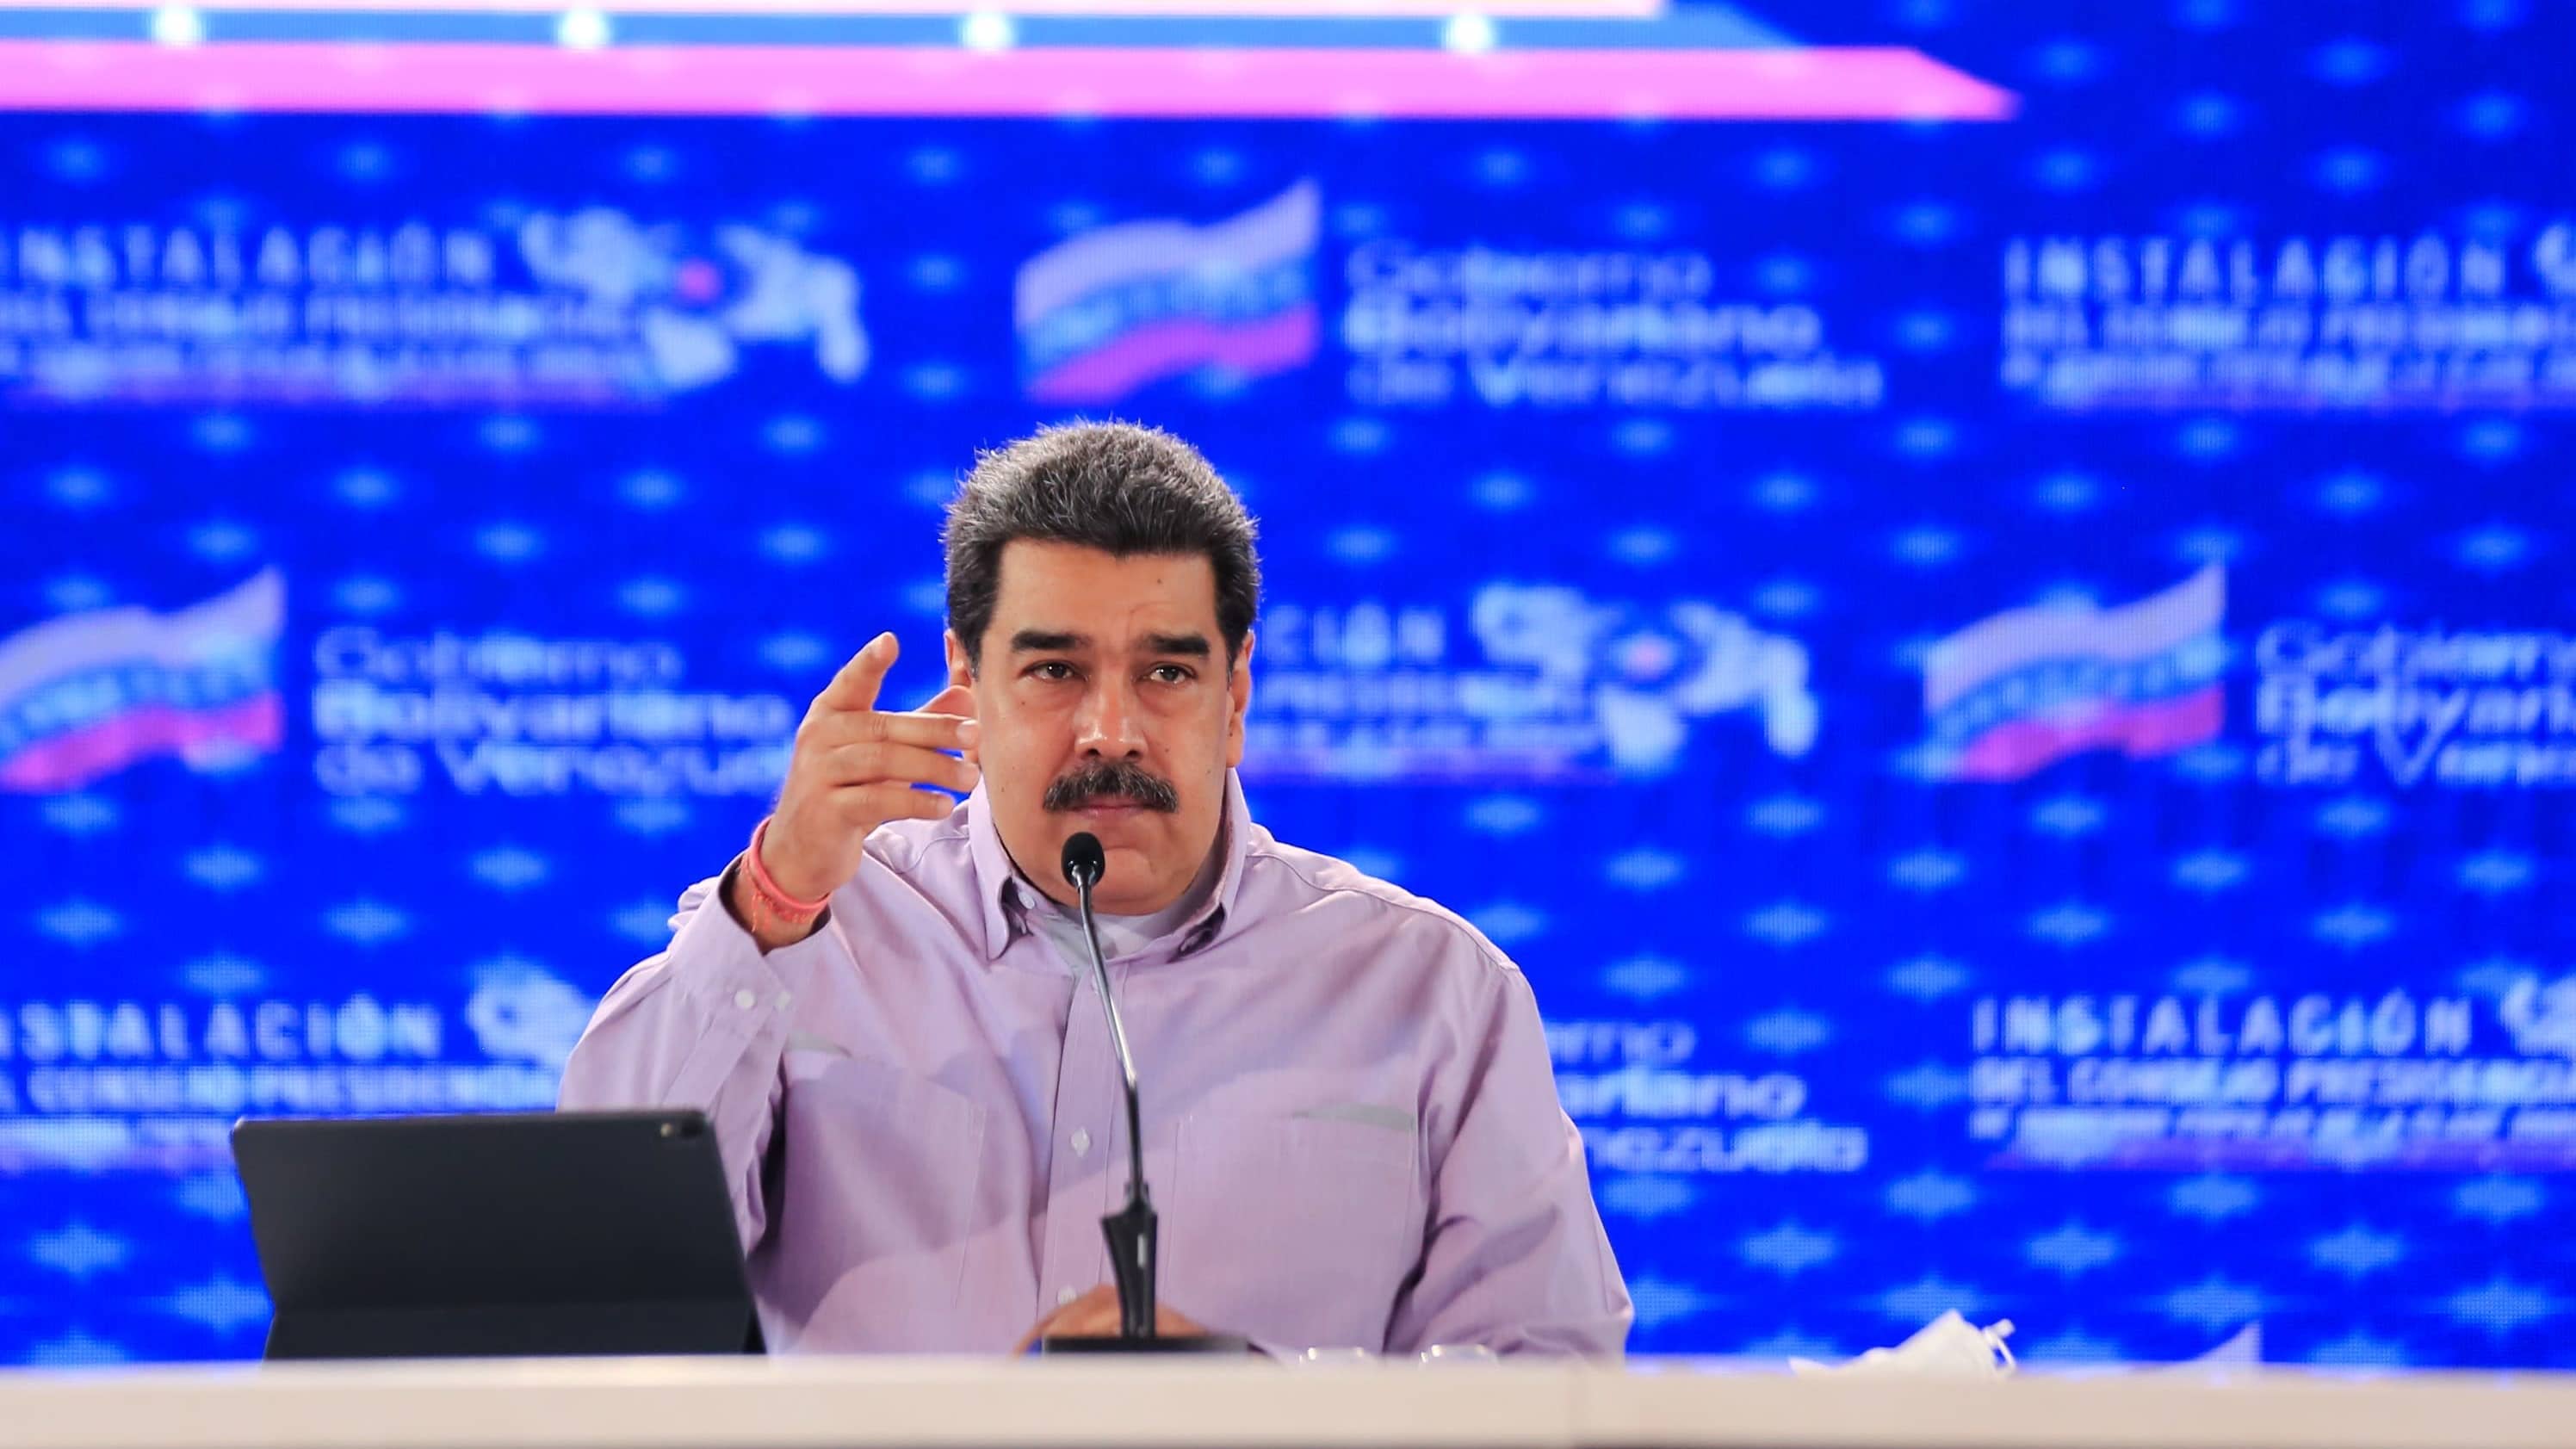 Maduro puhuu ja vahvistaa sanojaan kohottamalla oikeaa kättään. Hänellä on yllään vaalea kauluspaita. Hänen edessään pöydällä on mikrofoni ja näyttö. Taustakangas on sininen.